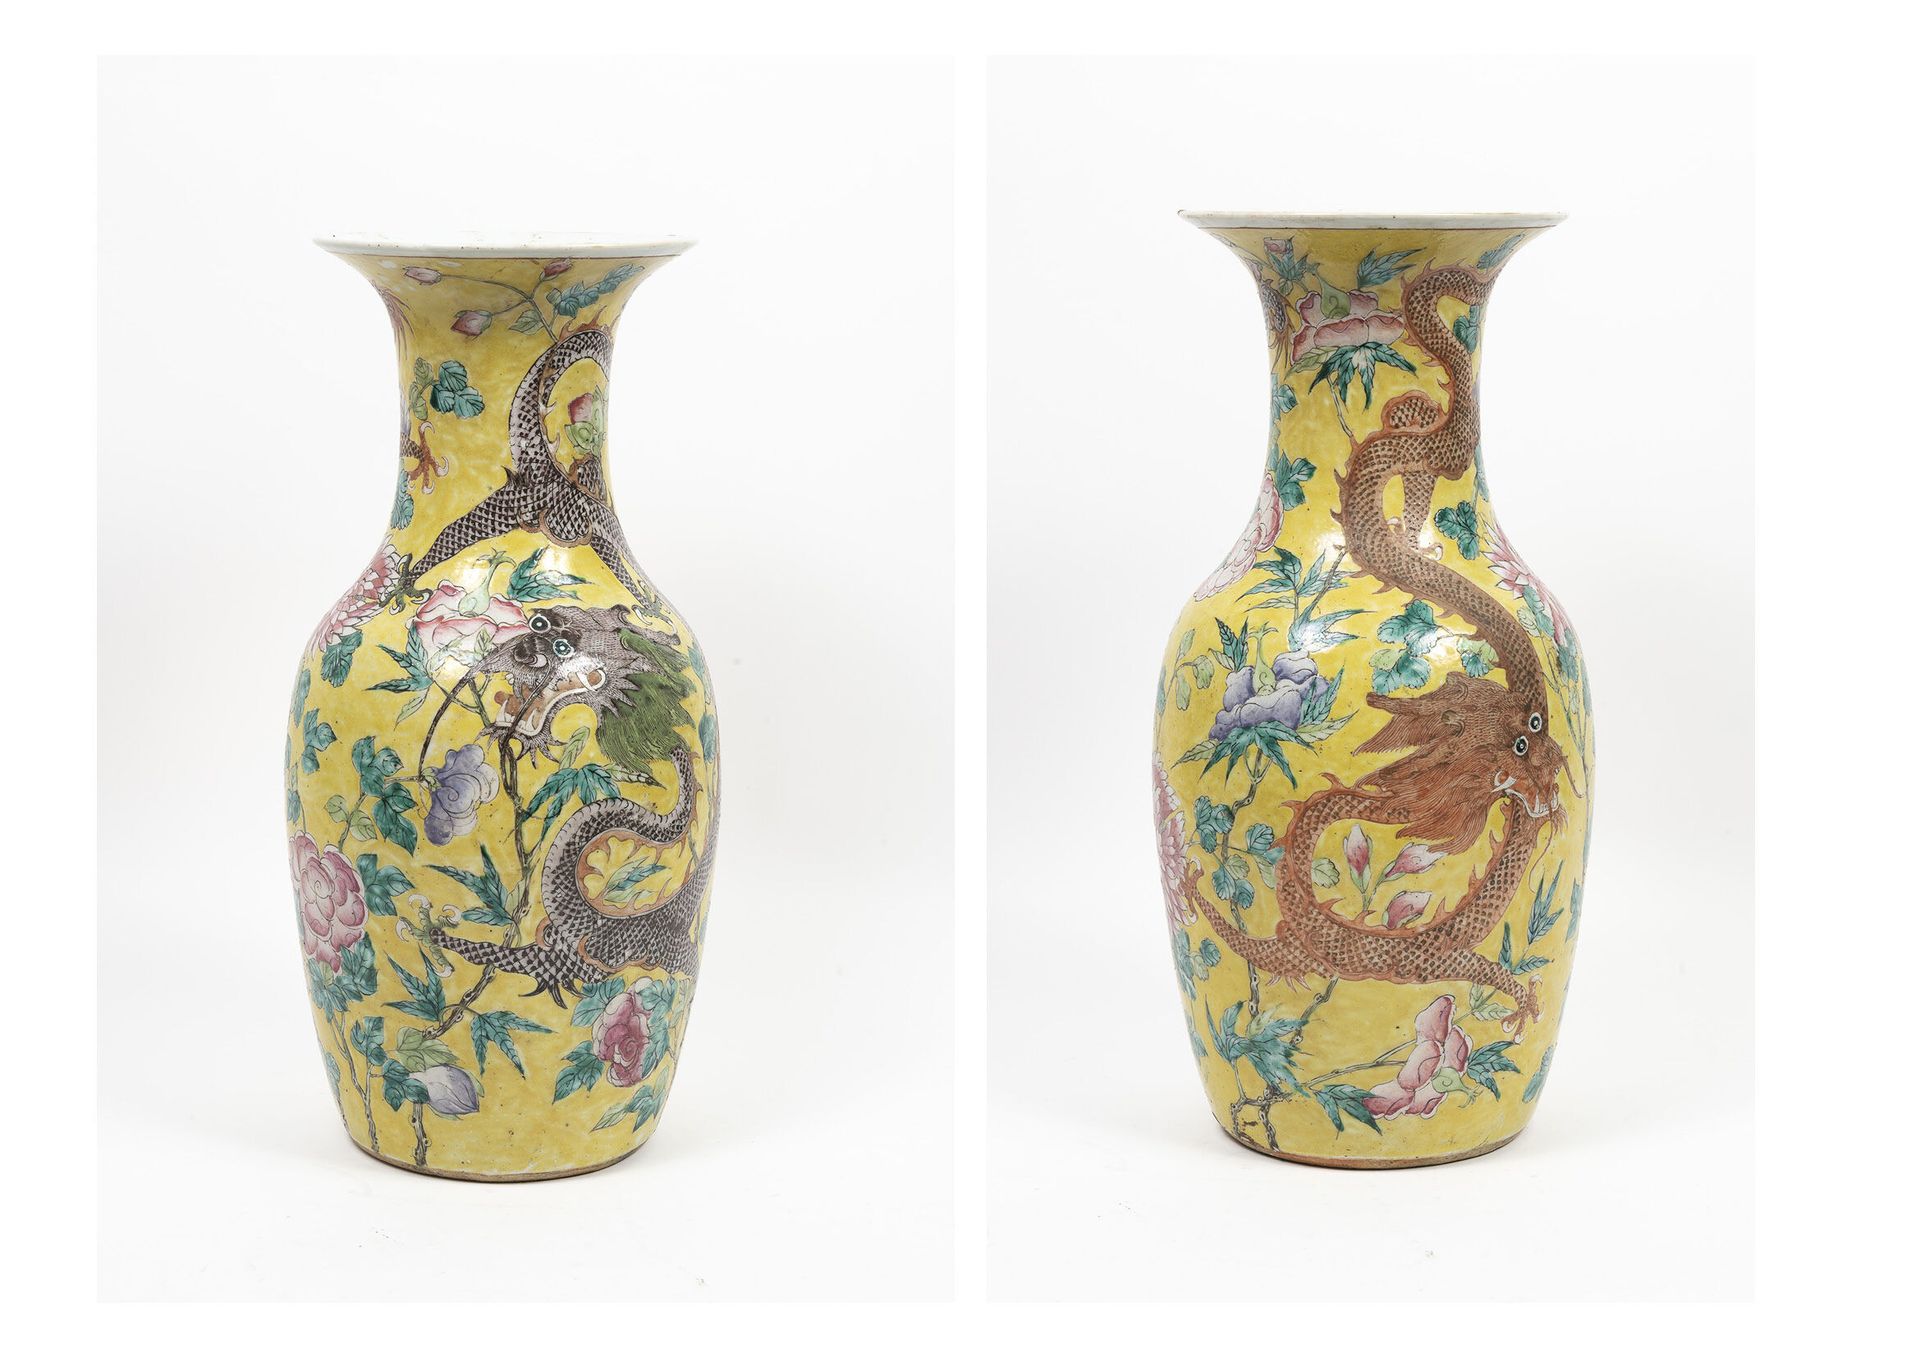 CHINE, fin du XIX- début du XXème siècle Vase aus Porzellan in Balusterform.

Po&hellip;